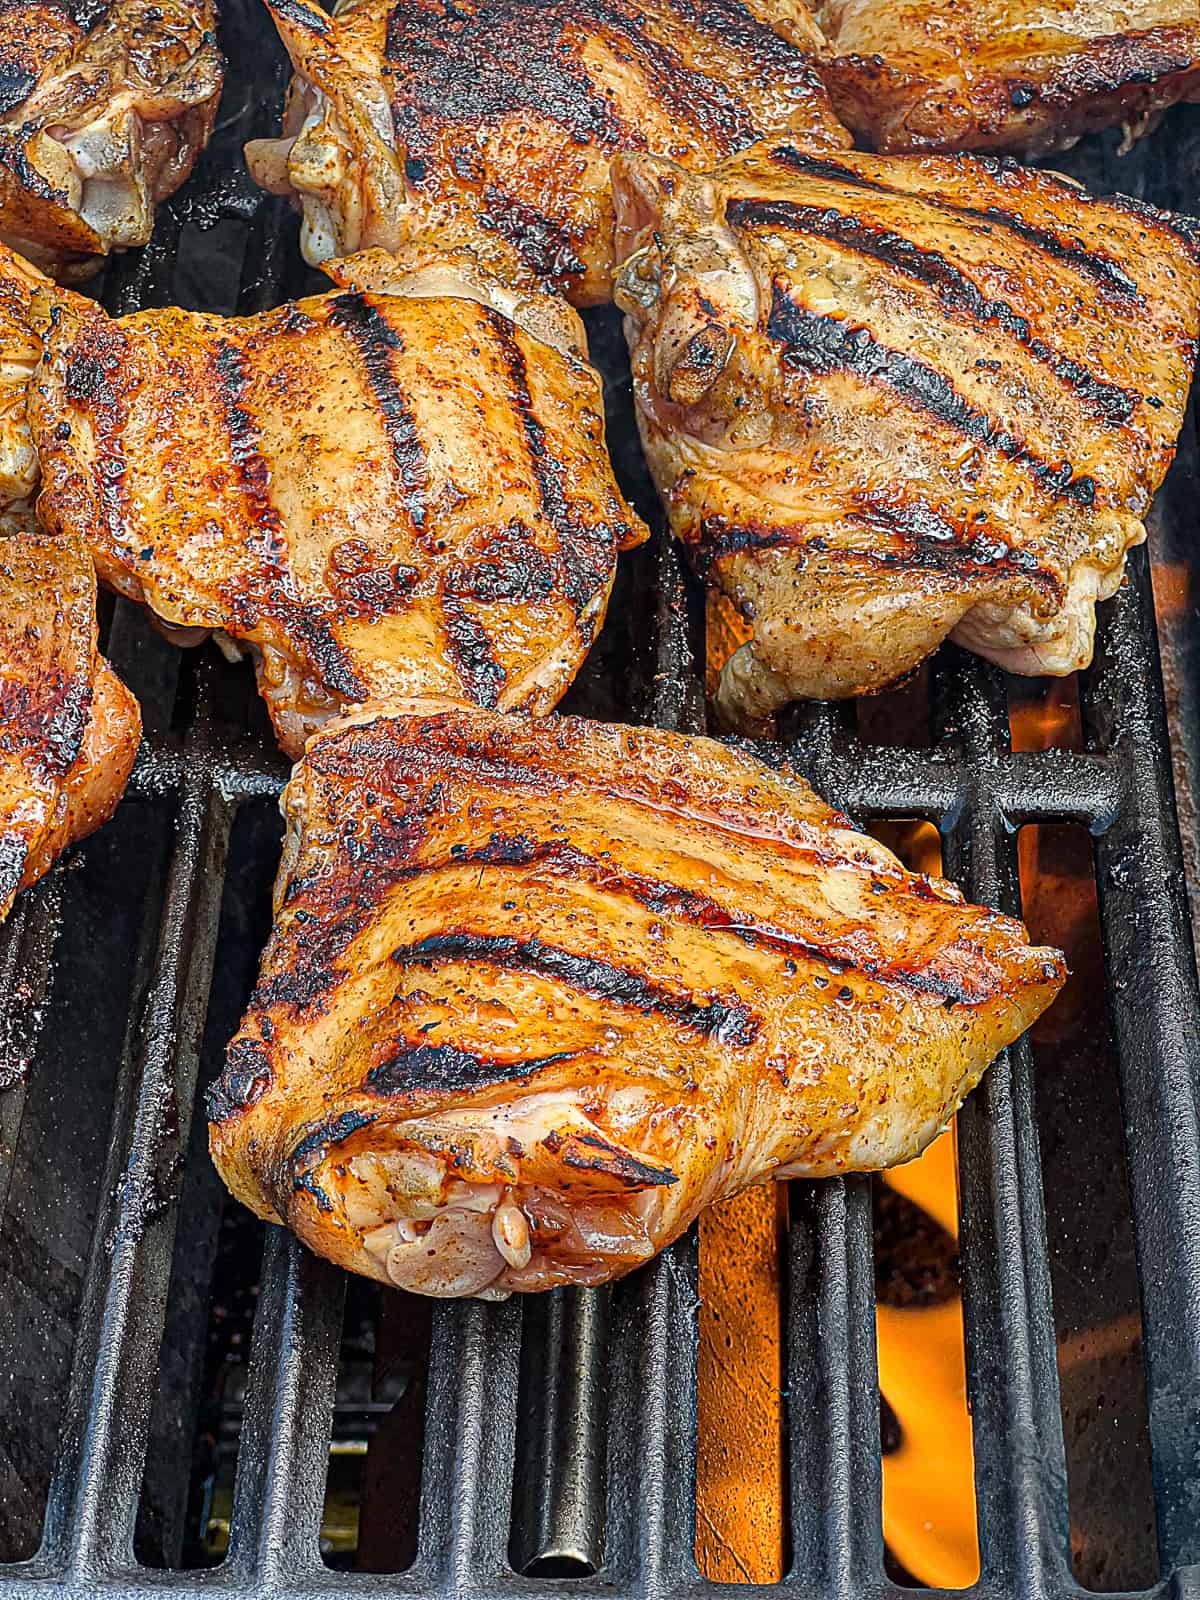 Grilled chicken thighs BBQ menu idea